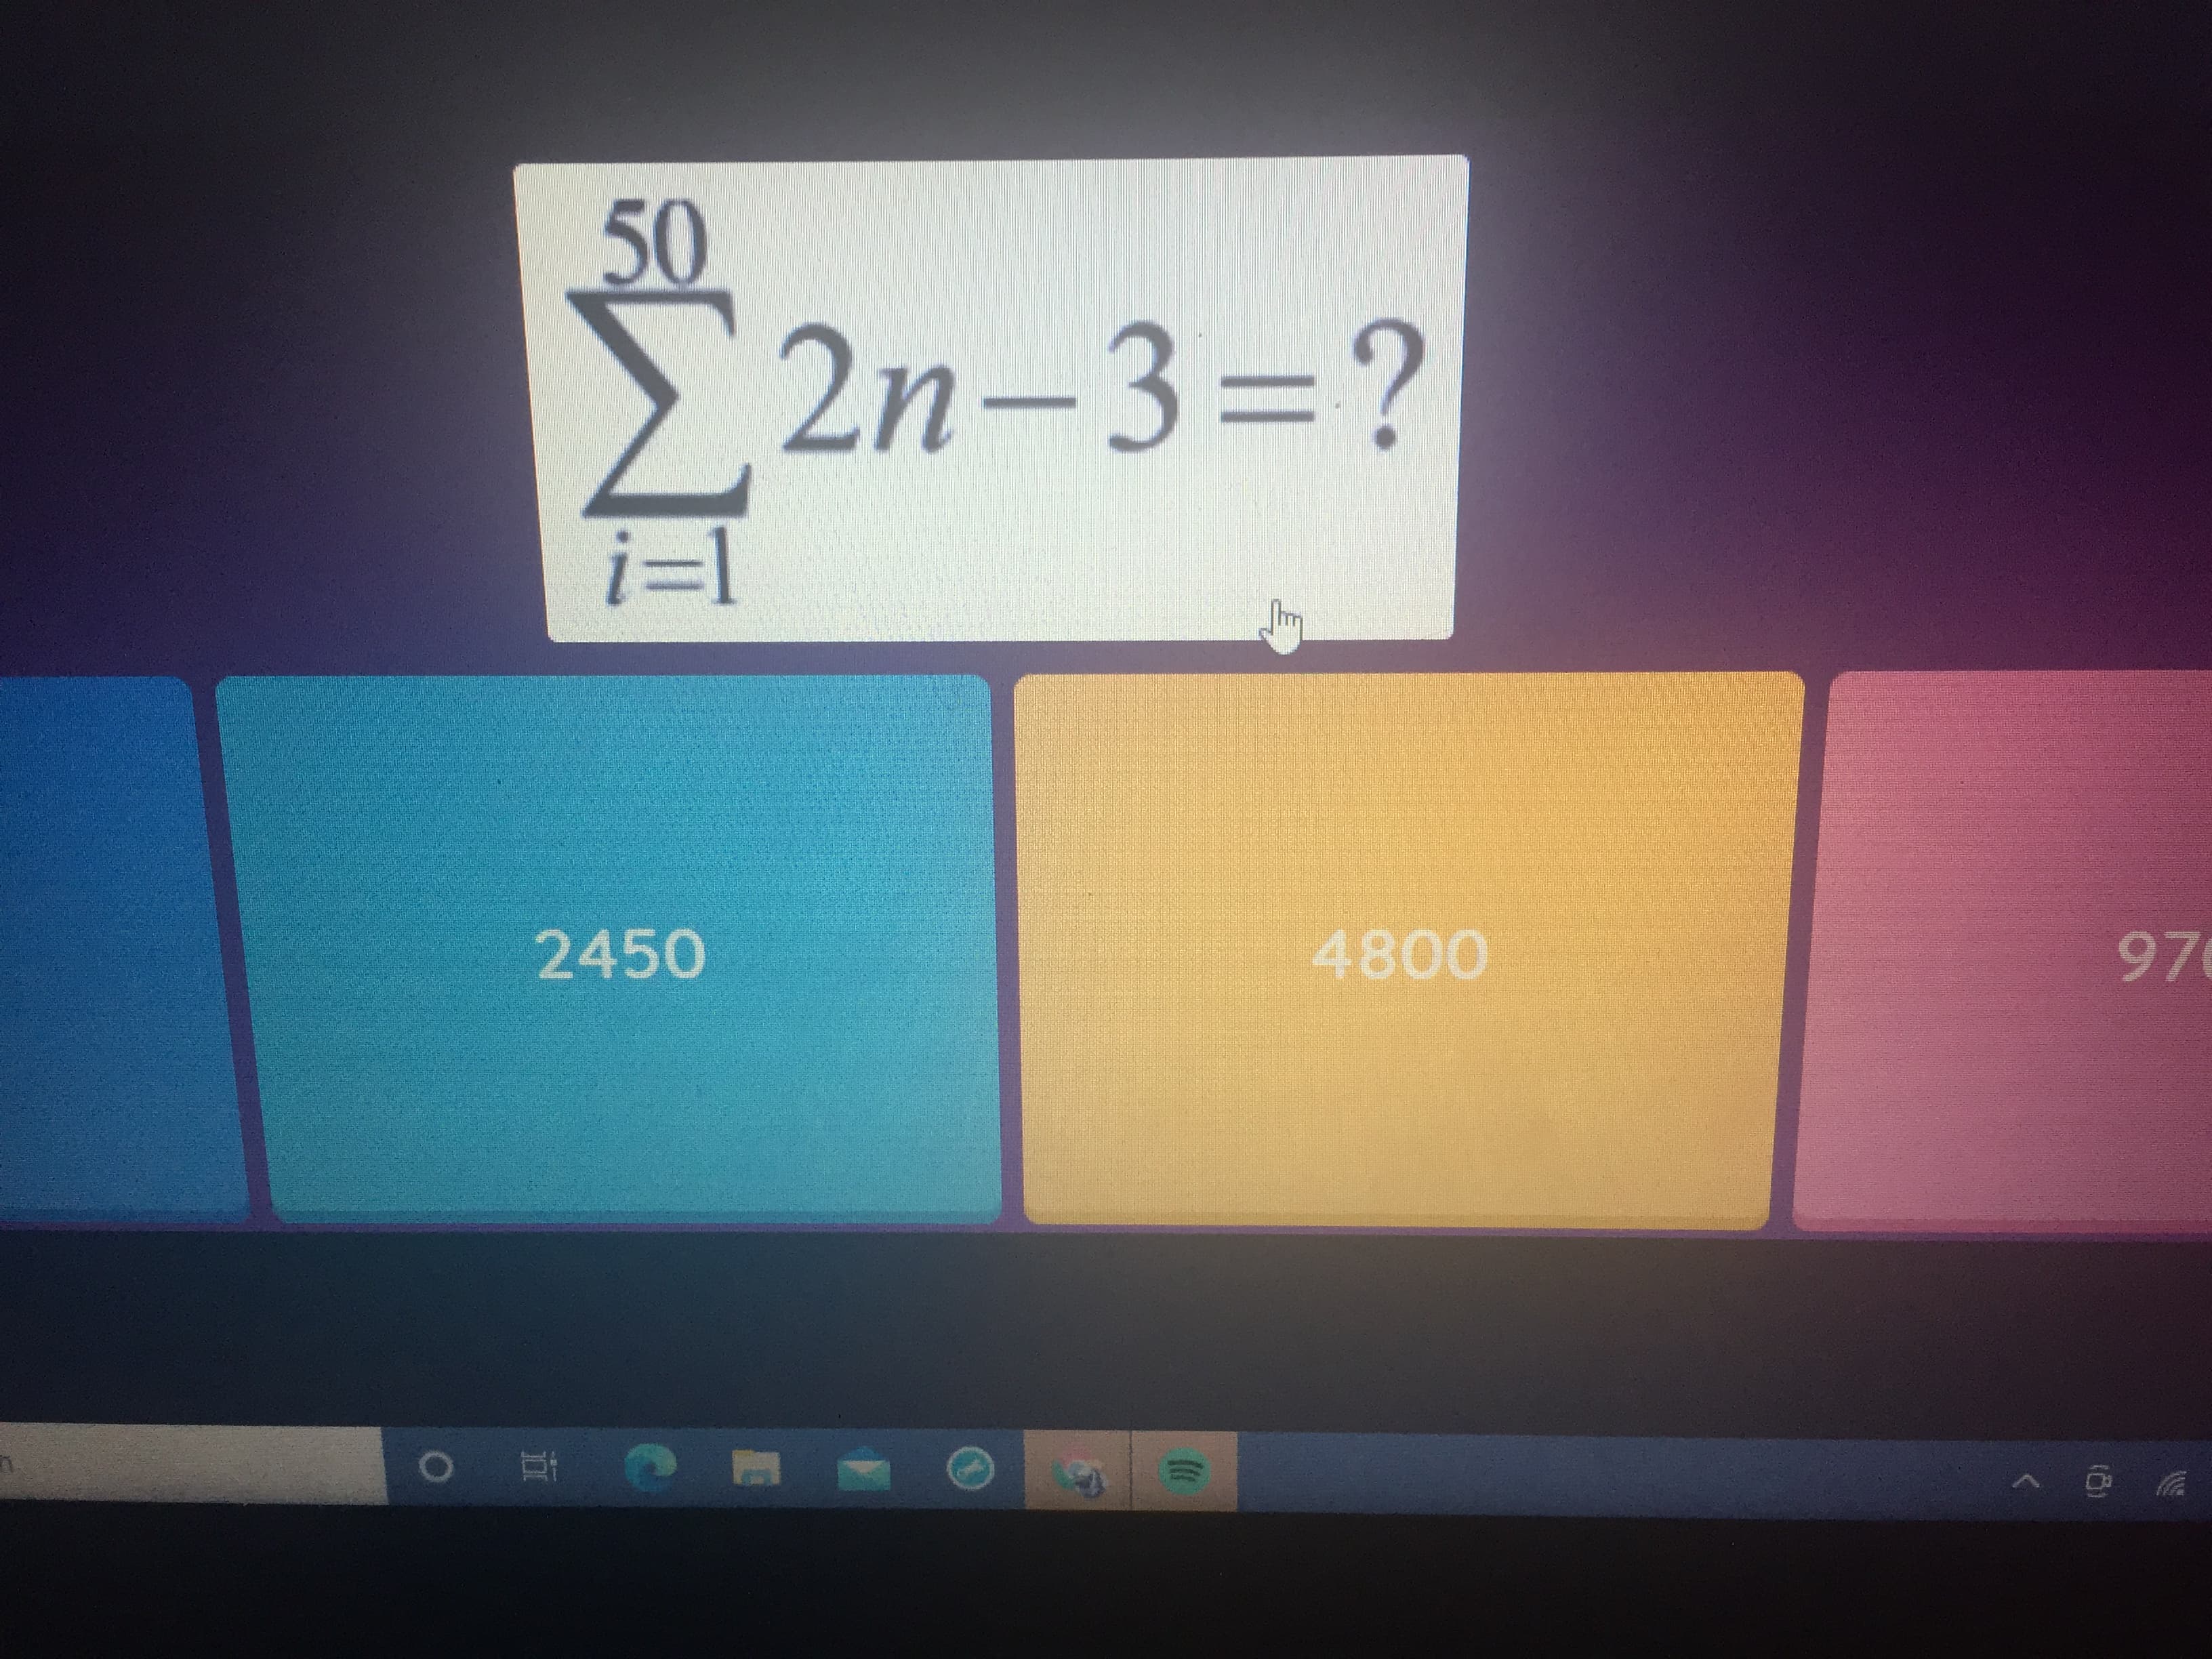 50
> 2n-3=?
i=1
